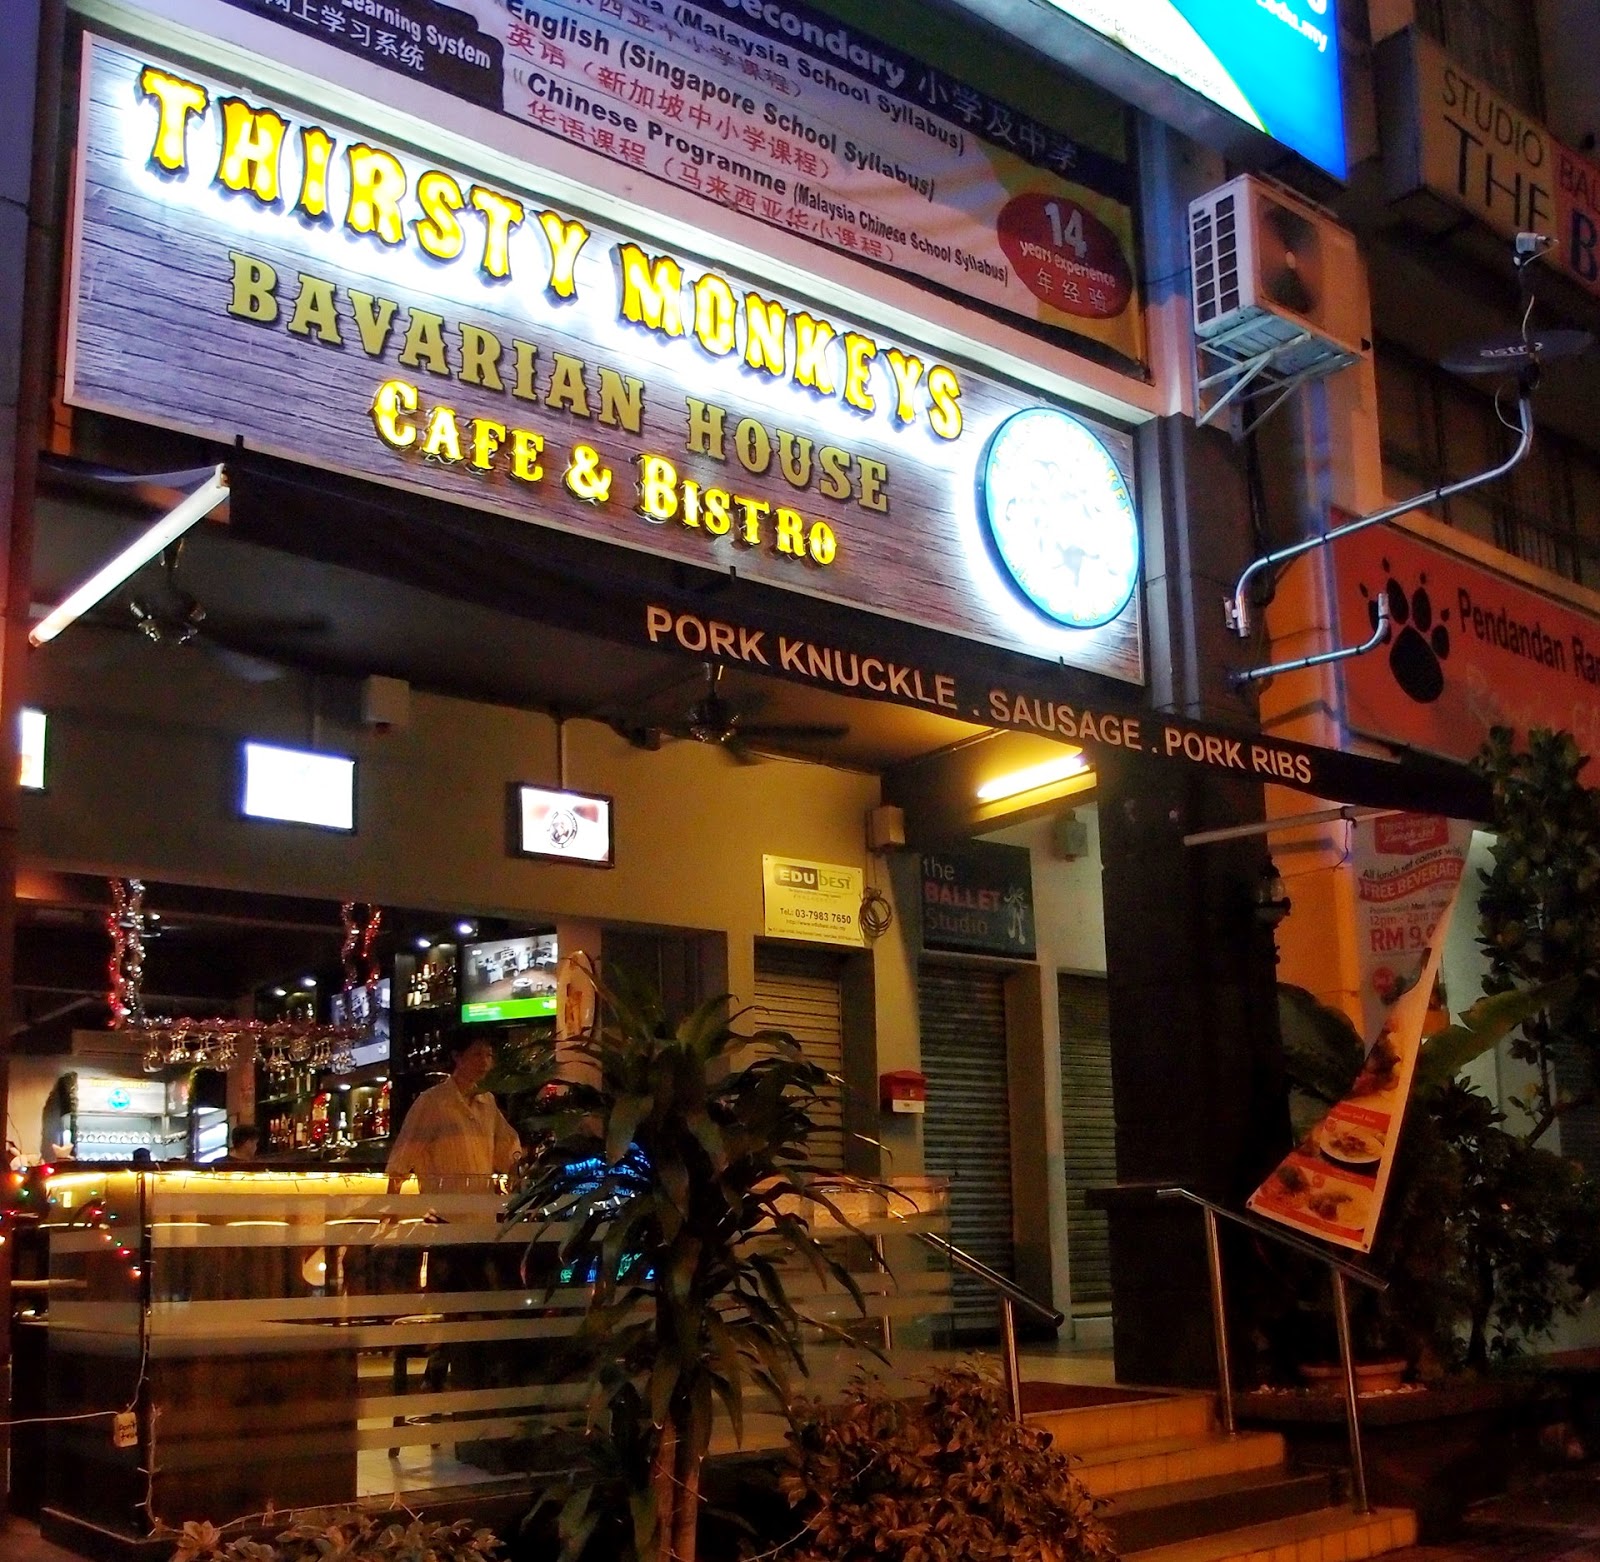 Best Restaurant To Eat: Thirsty Monkeys Café & Bistro Taman Desa Old